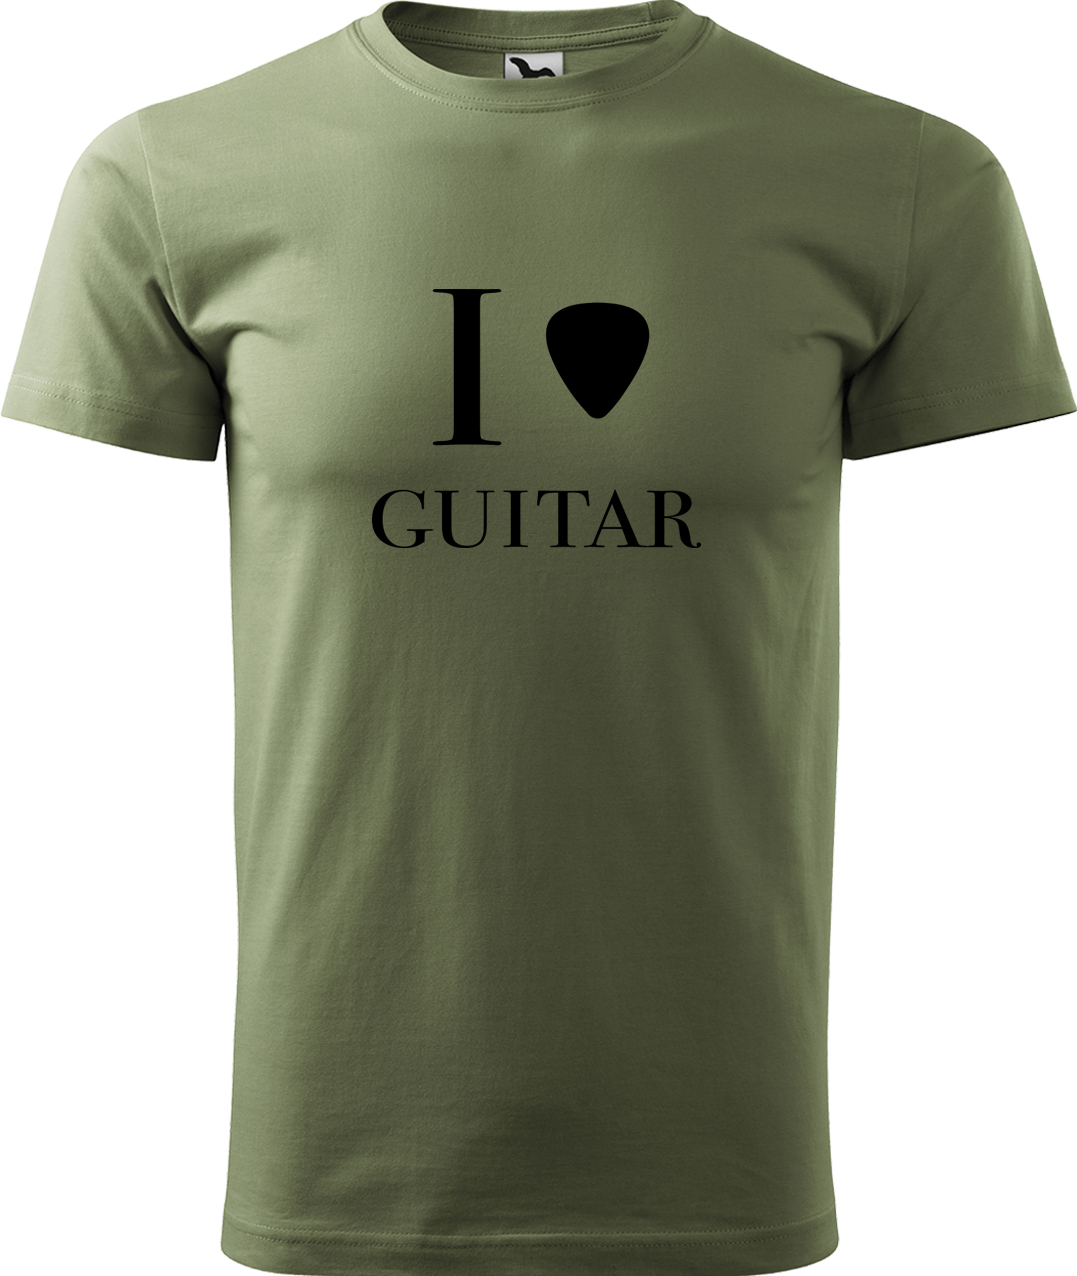 Pánské tričko s kytarou - I love guitar Velikost: L, Barva: Světlá khaki (28), Střih: pánský